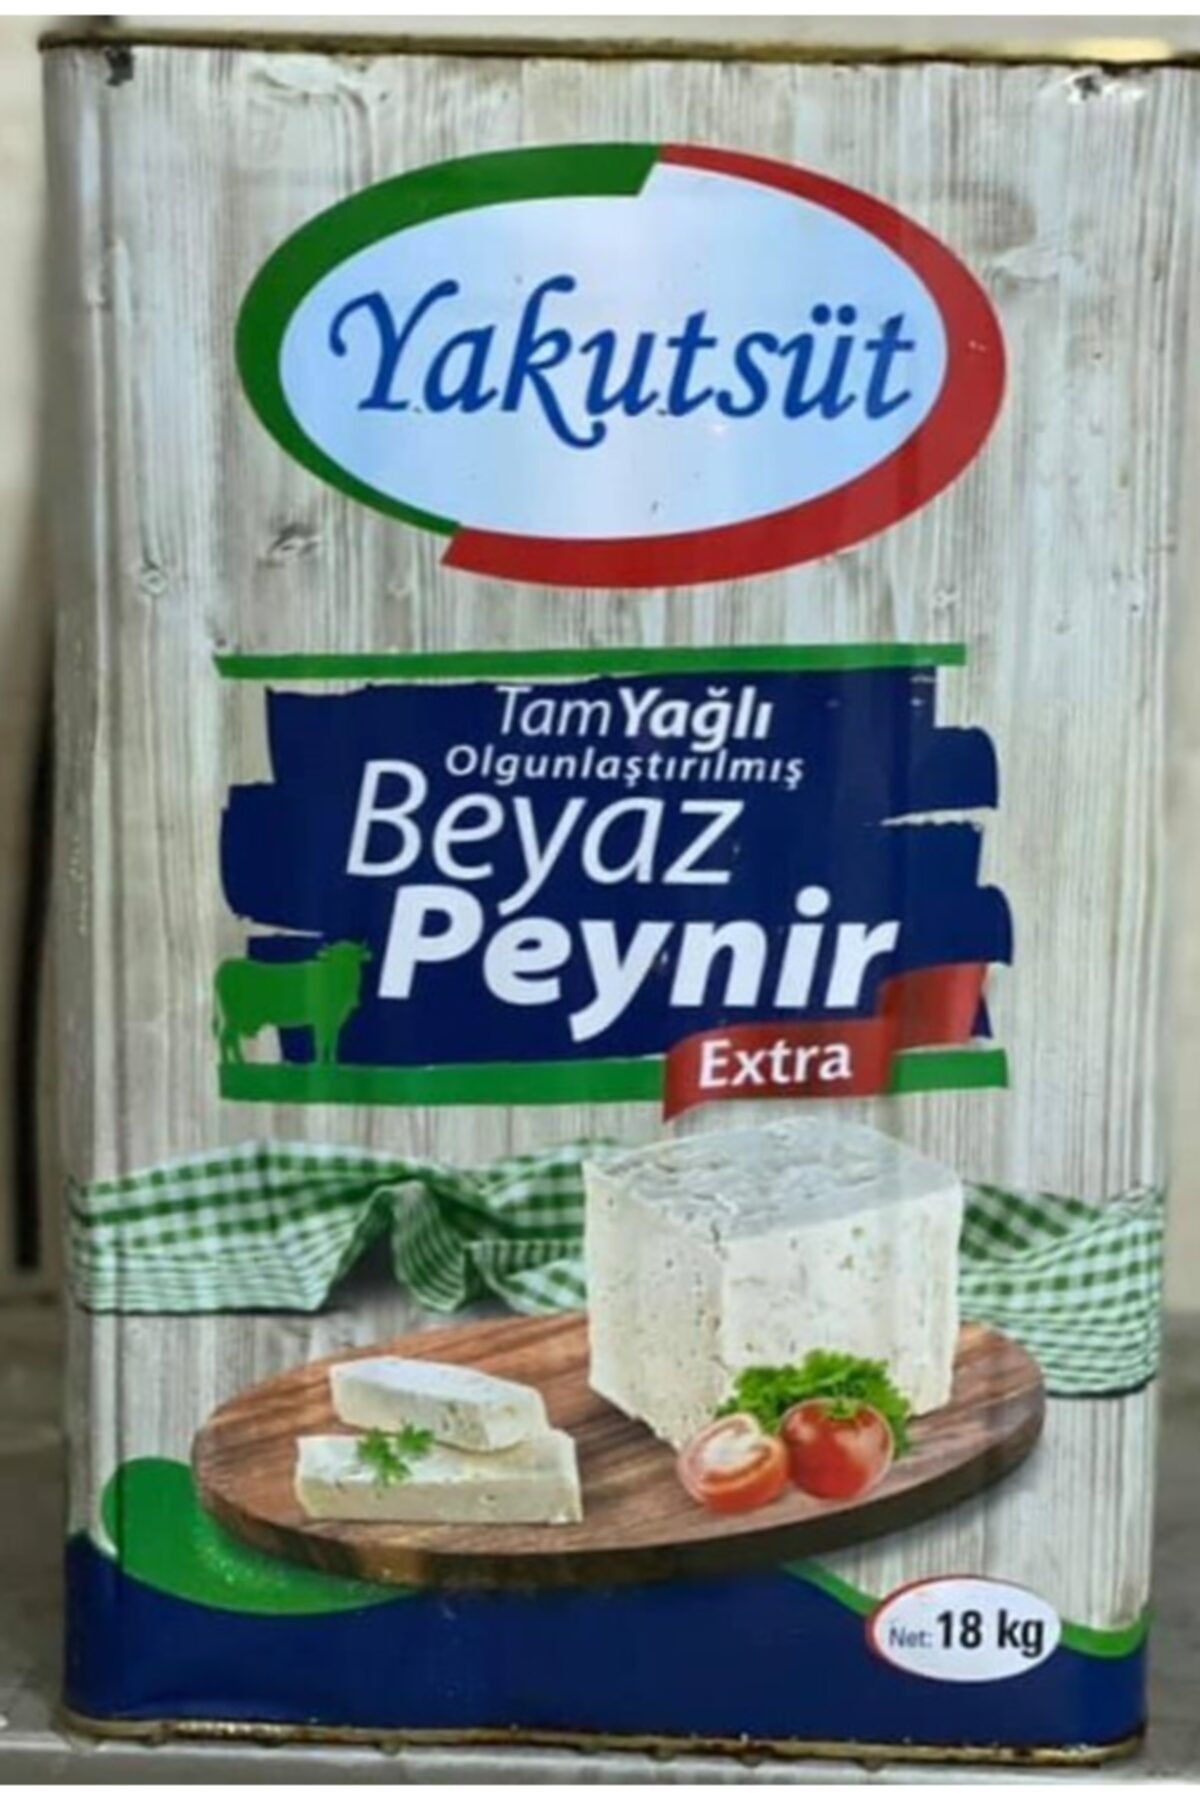 Yakut Süt Ürünleri Teneke Olgunlaştırılmış Beyaz Peynir 18kg